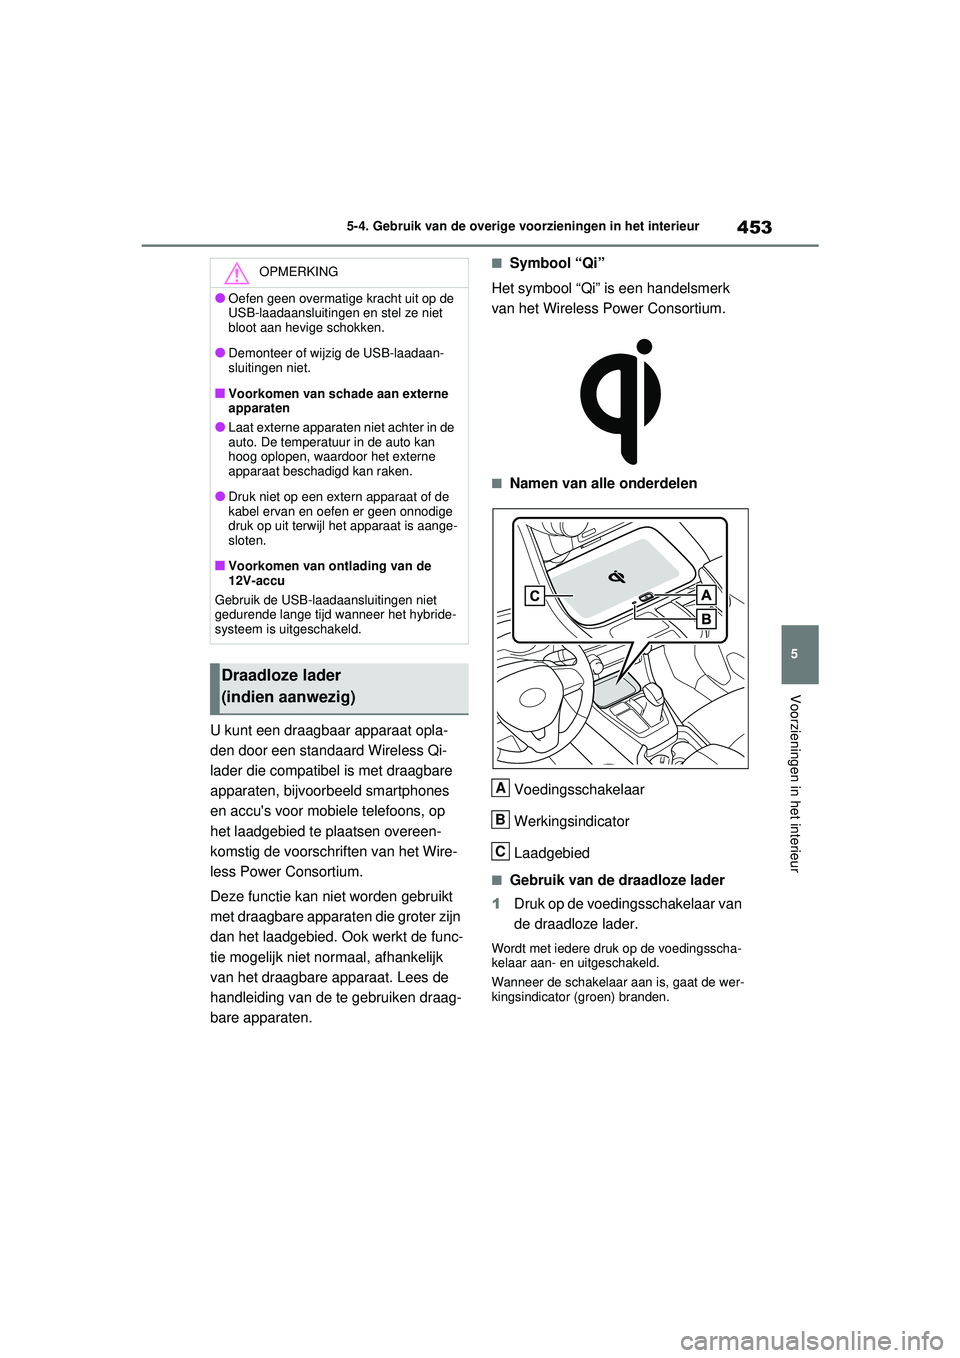 TOYOTA RAV4 HYBRID 2021  Instructieboekje (in Dutch) 453
5
5-4. Gebruik van de overige voorzieningen in het interieur
Voorzieningen in het interieur
U kunt een draagbaar apparaat opla-
den door een standaard Wireless Qi-
lader die compatibel is met draa